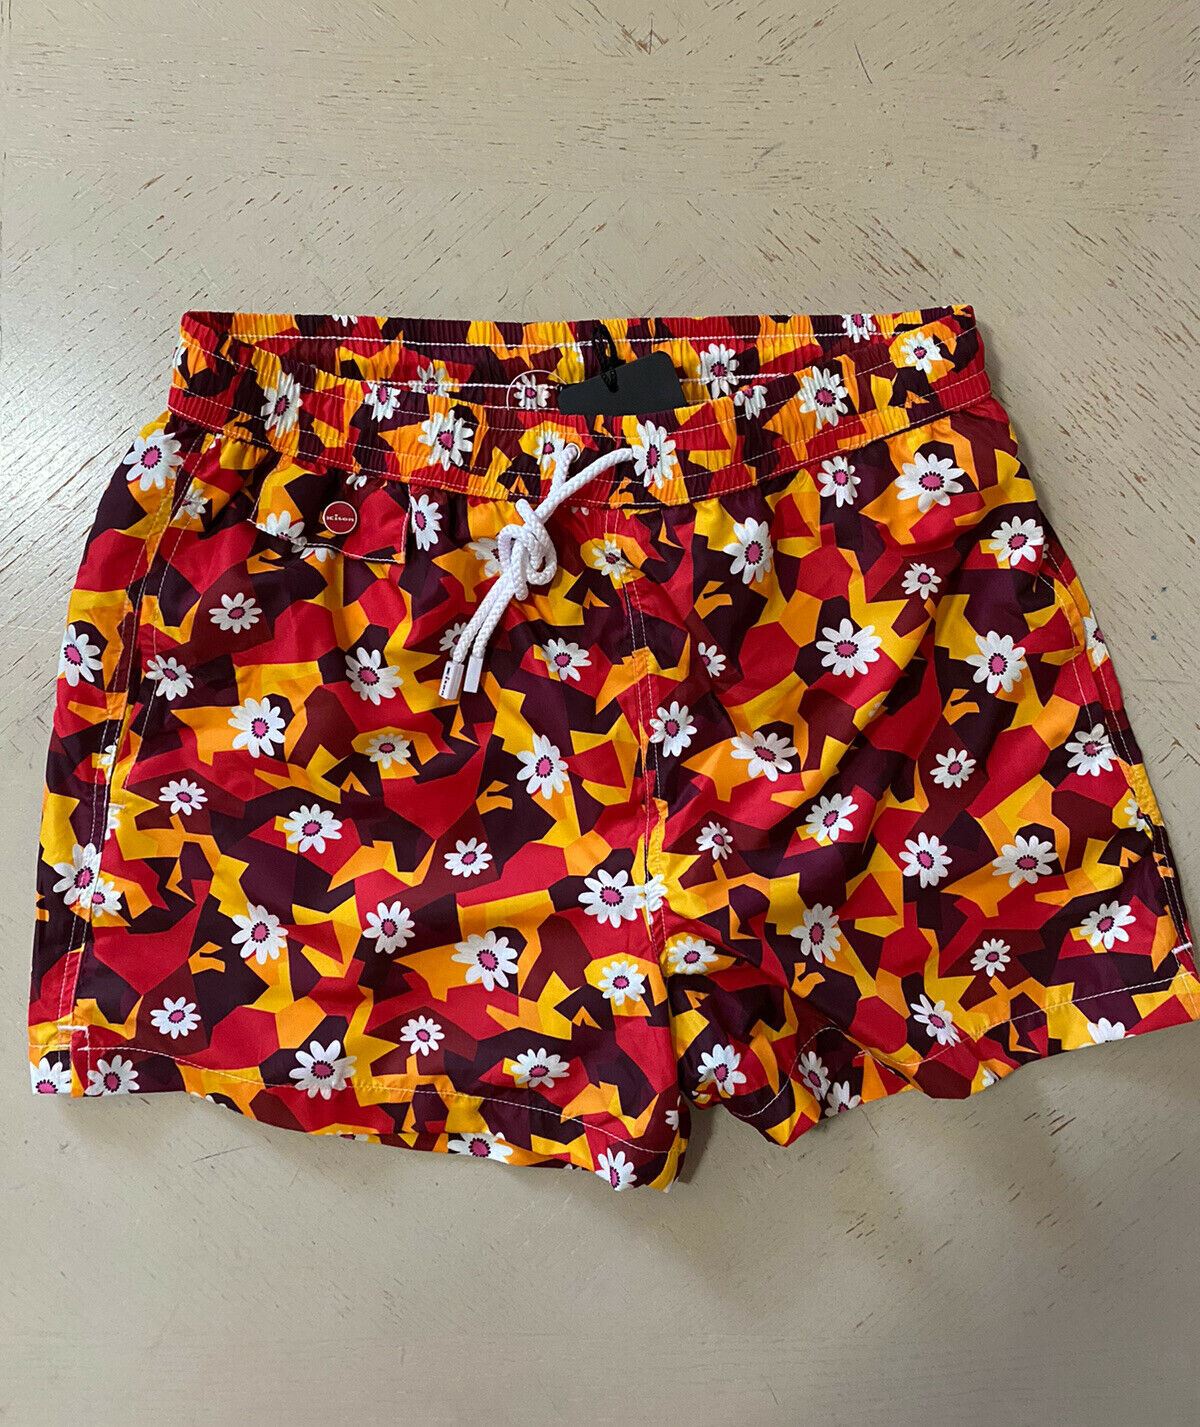 Мужские шорты для плавания NWT Kiton с геометрическим цветочным принтом, оранжевые/разноцветные, размер M